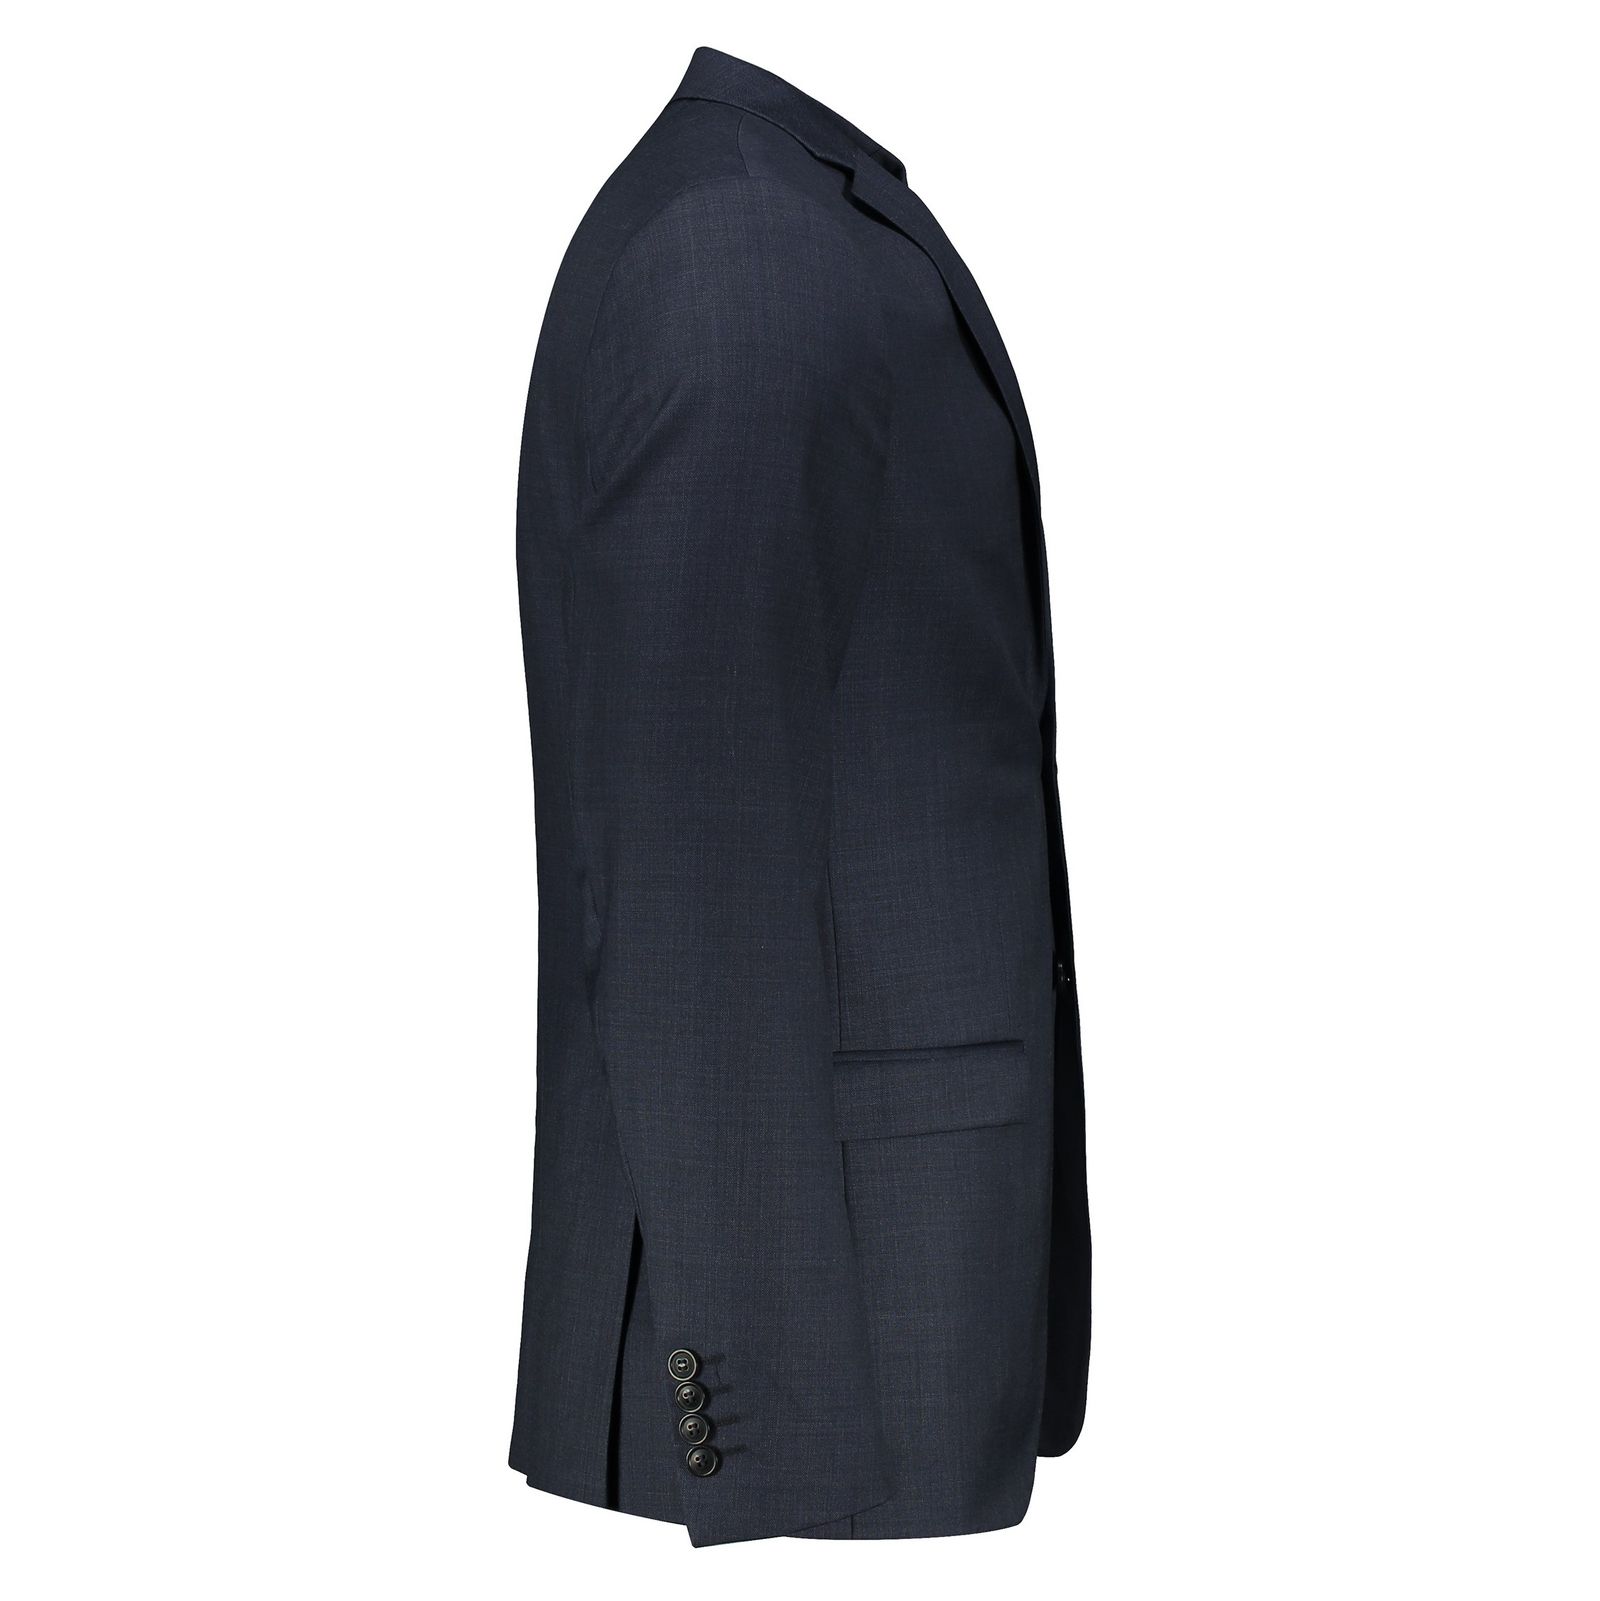 کت تک رسمی پشمی مردانه - سلکتد - سرمه اي - 4